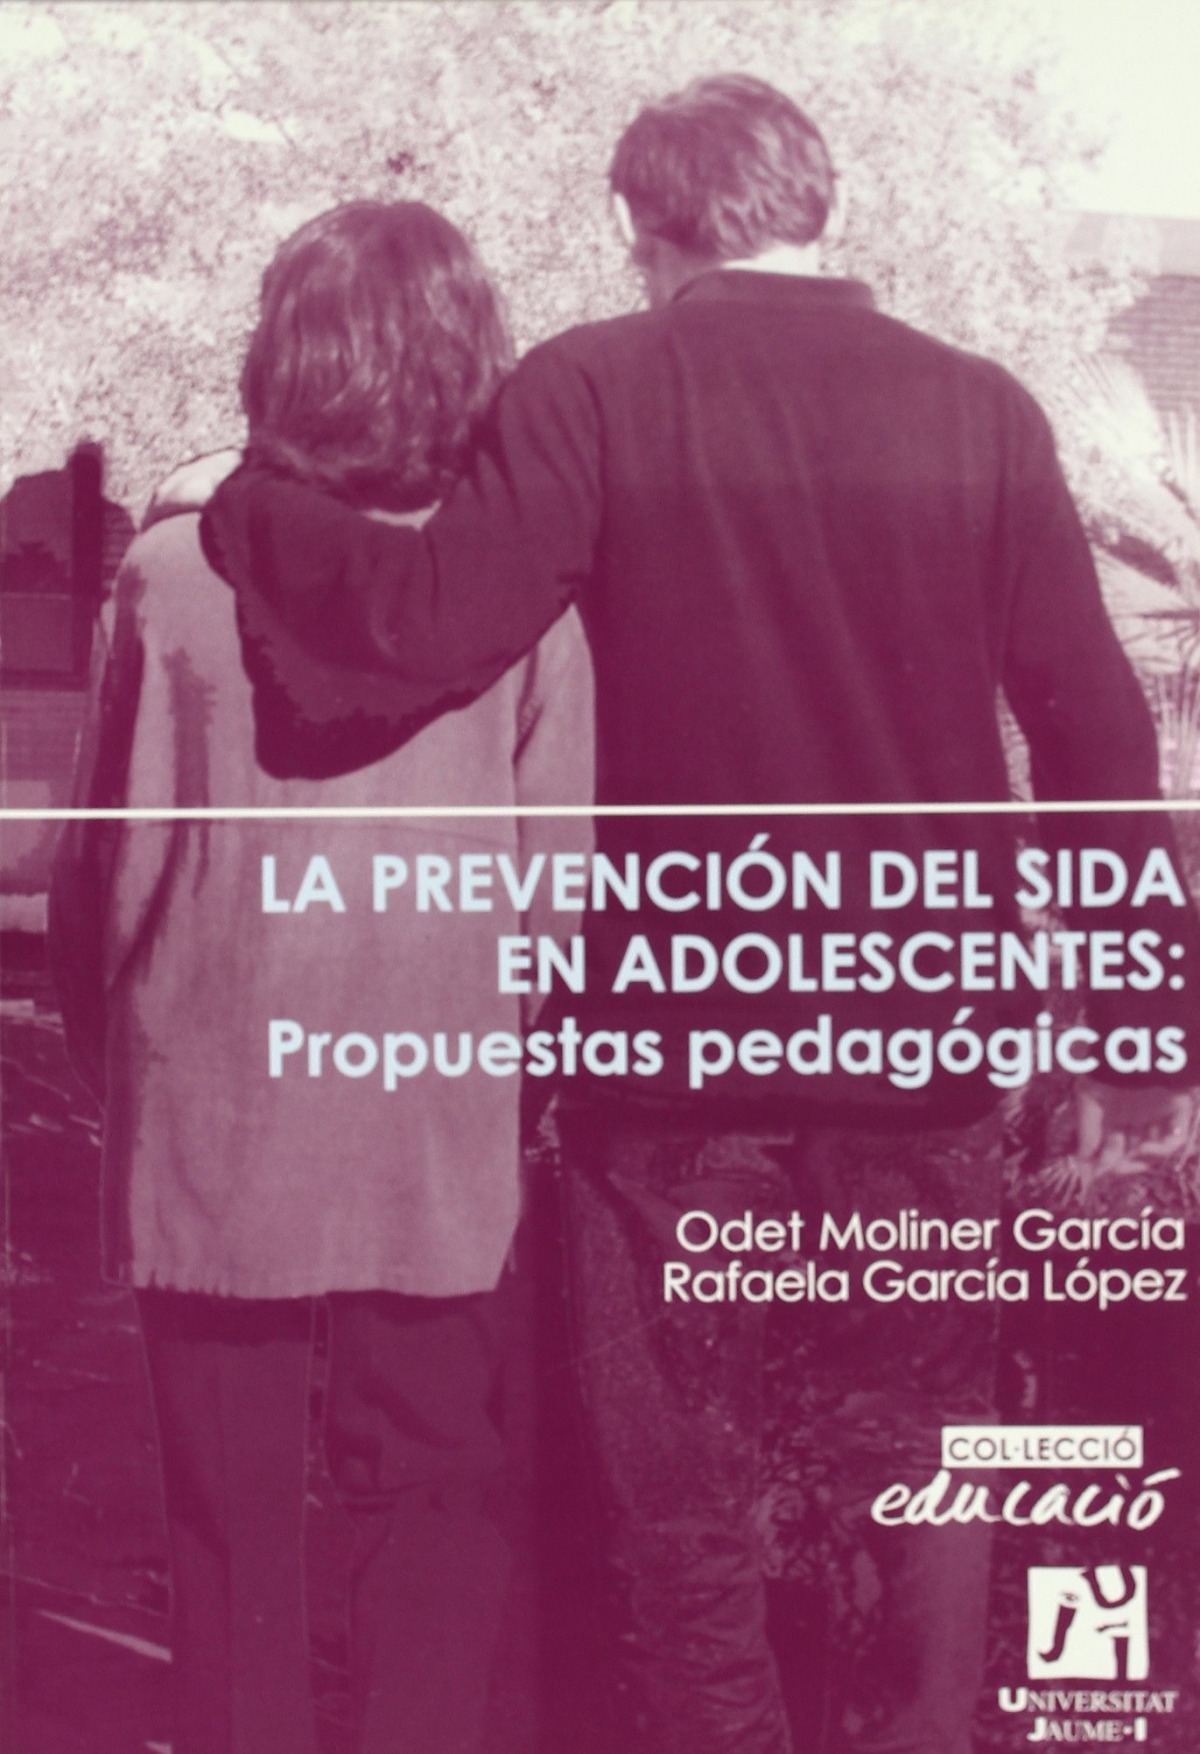 La prevención del Sida en adolescentes: Propuestas pedagógic - Moliner García, María Odet/ García López